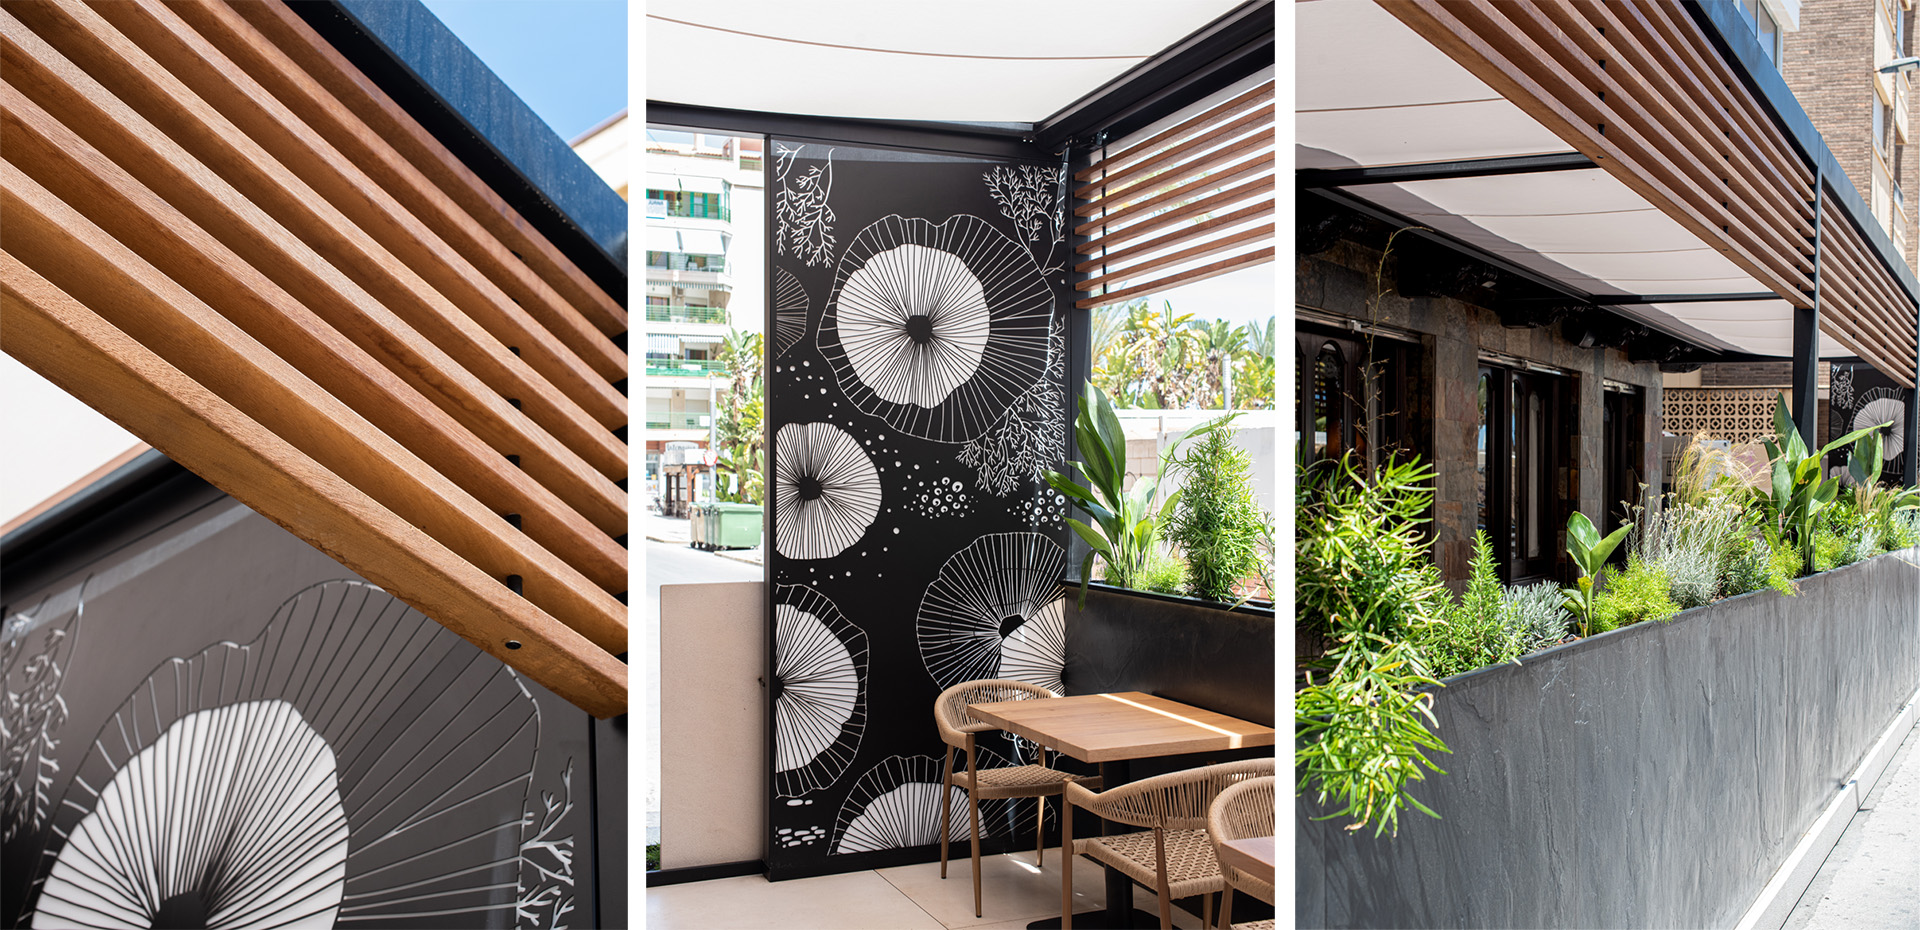 Detalles de las piezas que componen el diseño de terraza de restaurante